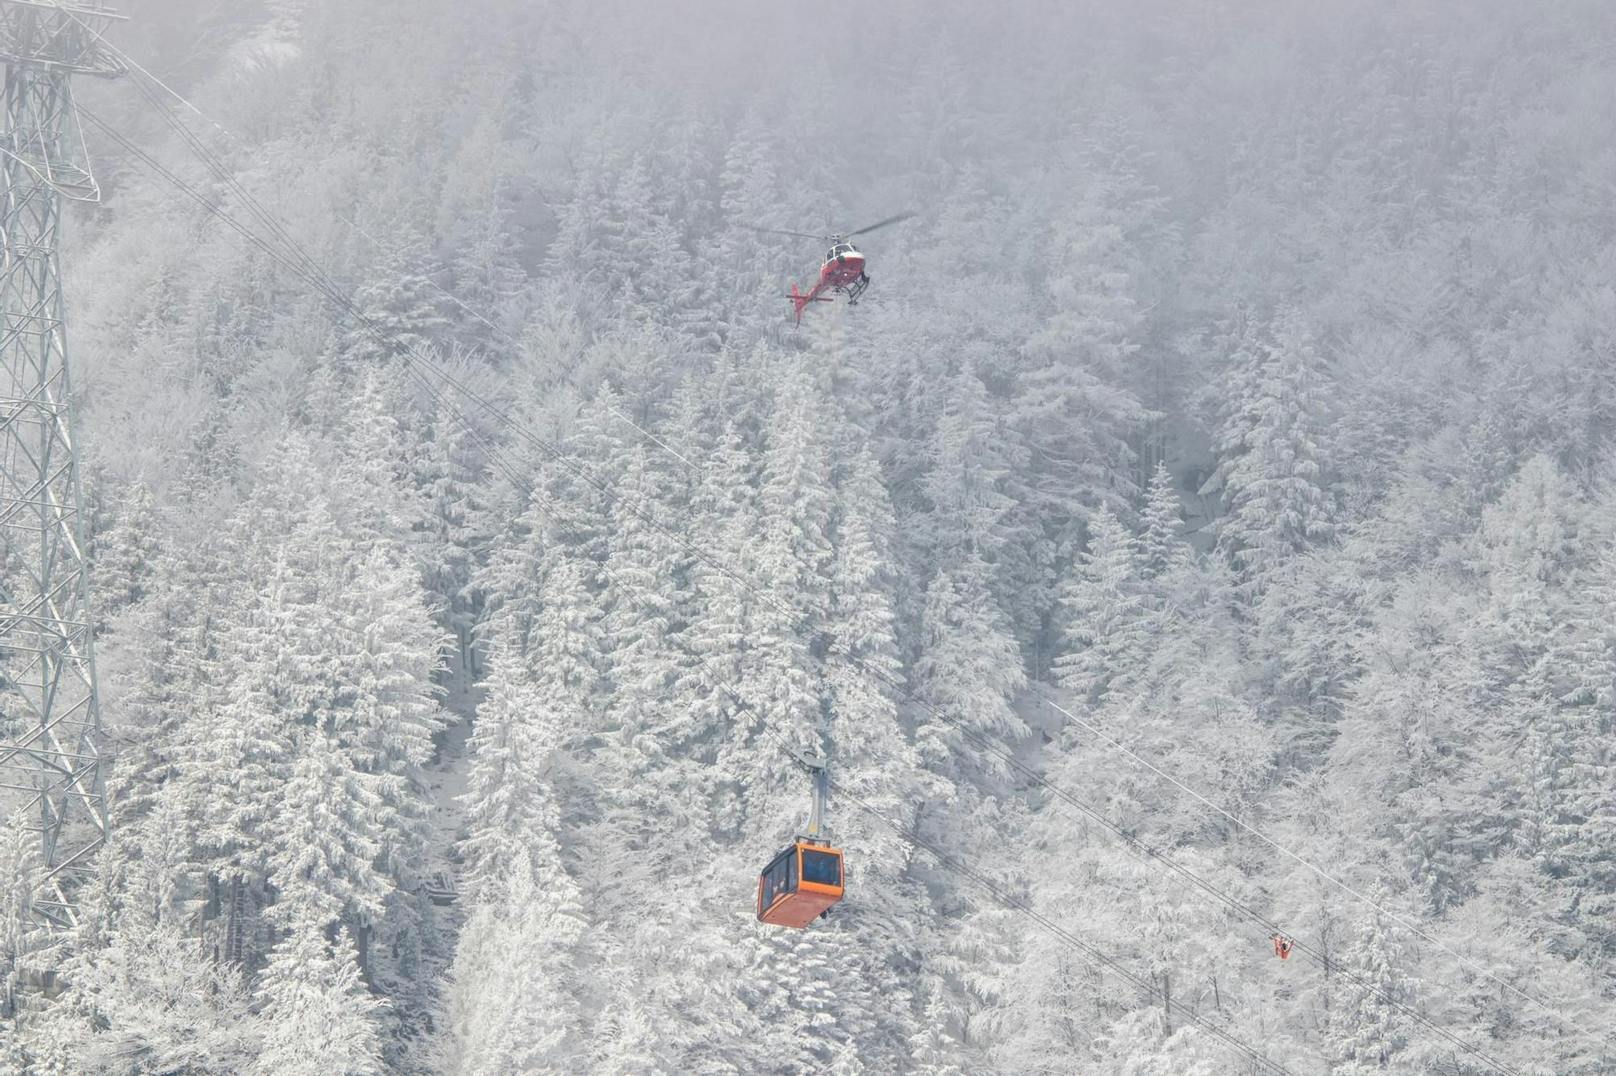 Eine Seilbahn der Lungern-Turren-Bahn im Schweizer Kanton Obwalden steckte am 14. Februar 2021 stundenlang fest. 27 Passagiere mussten per Heli evakuiert werden.